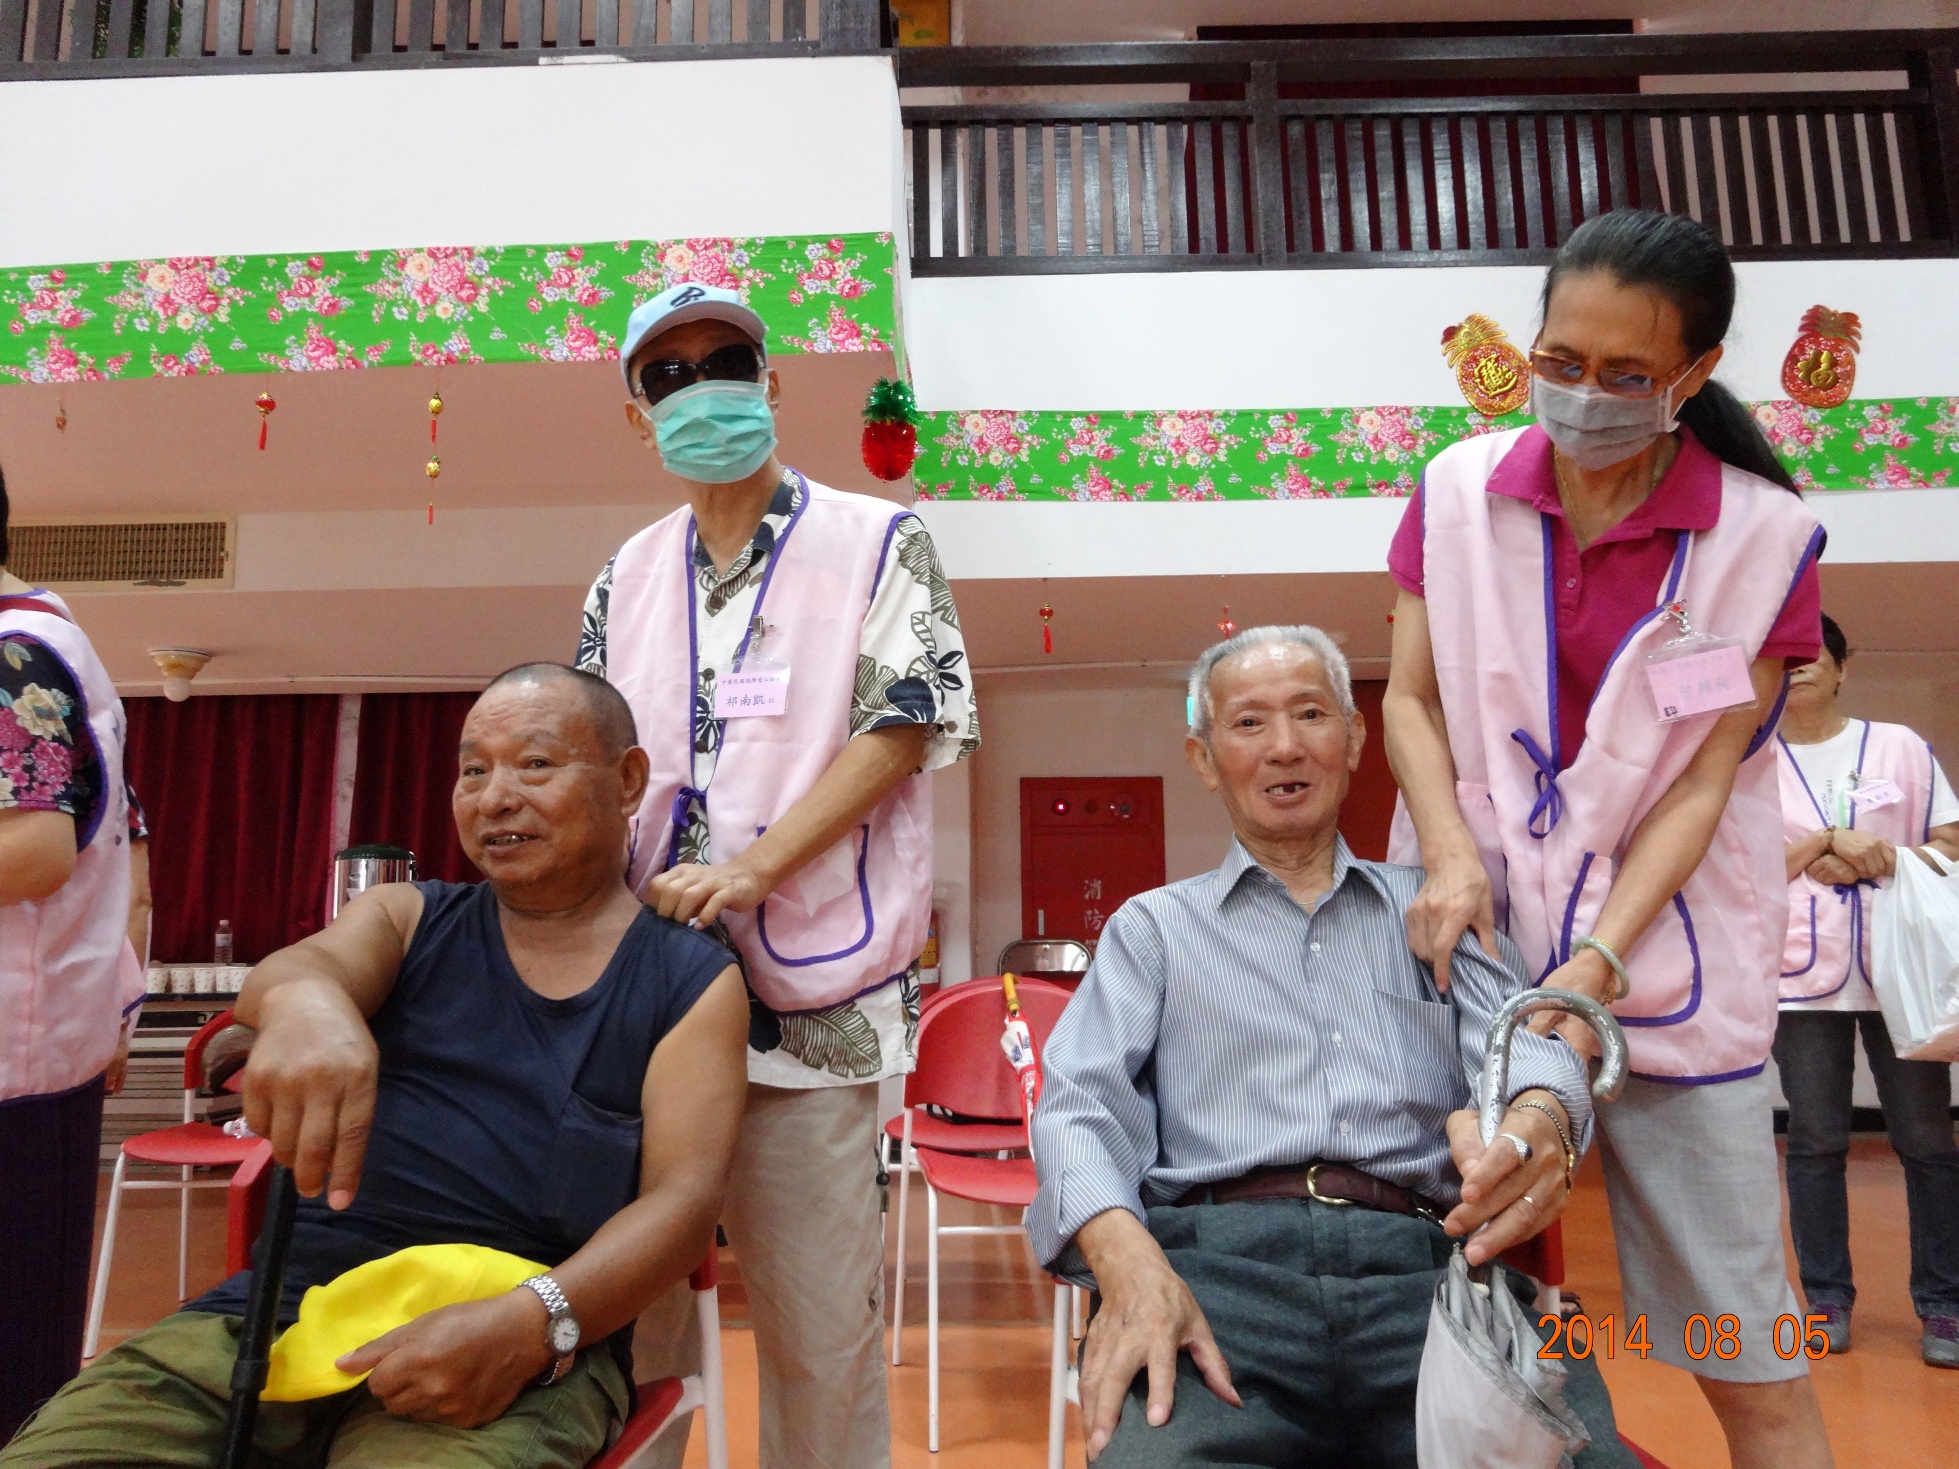 中華民國視障愛心協會到仁愛之家幫長輩免費按摩

